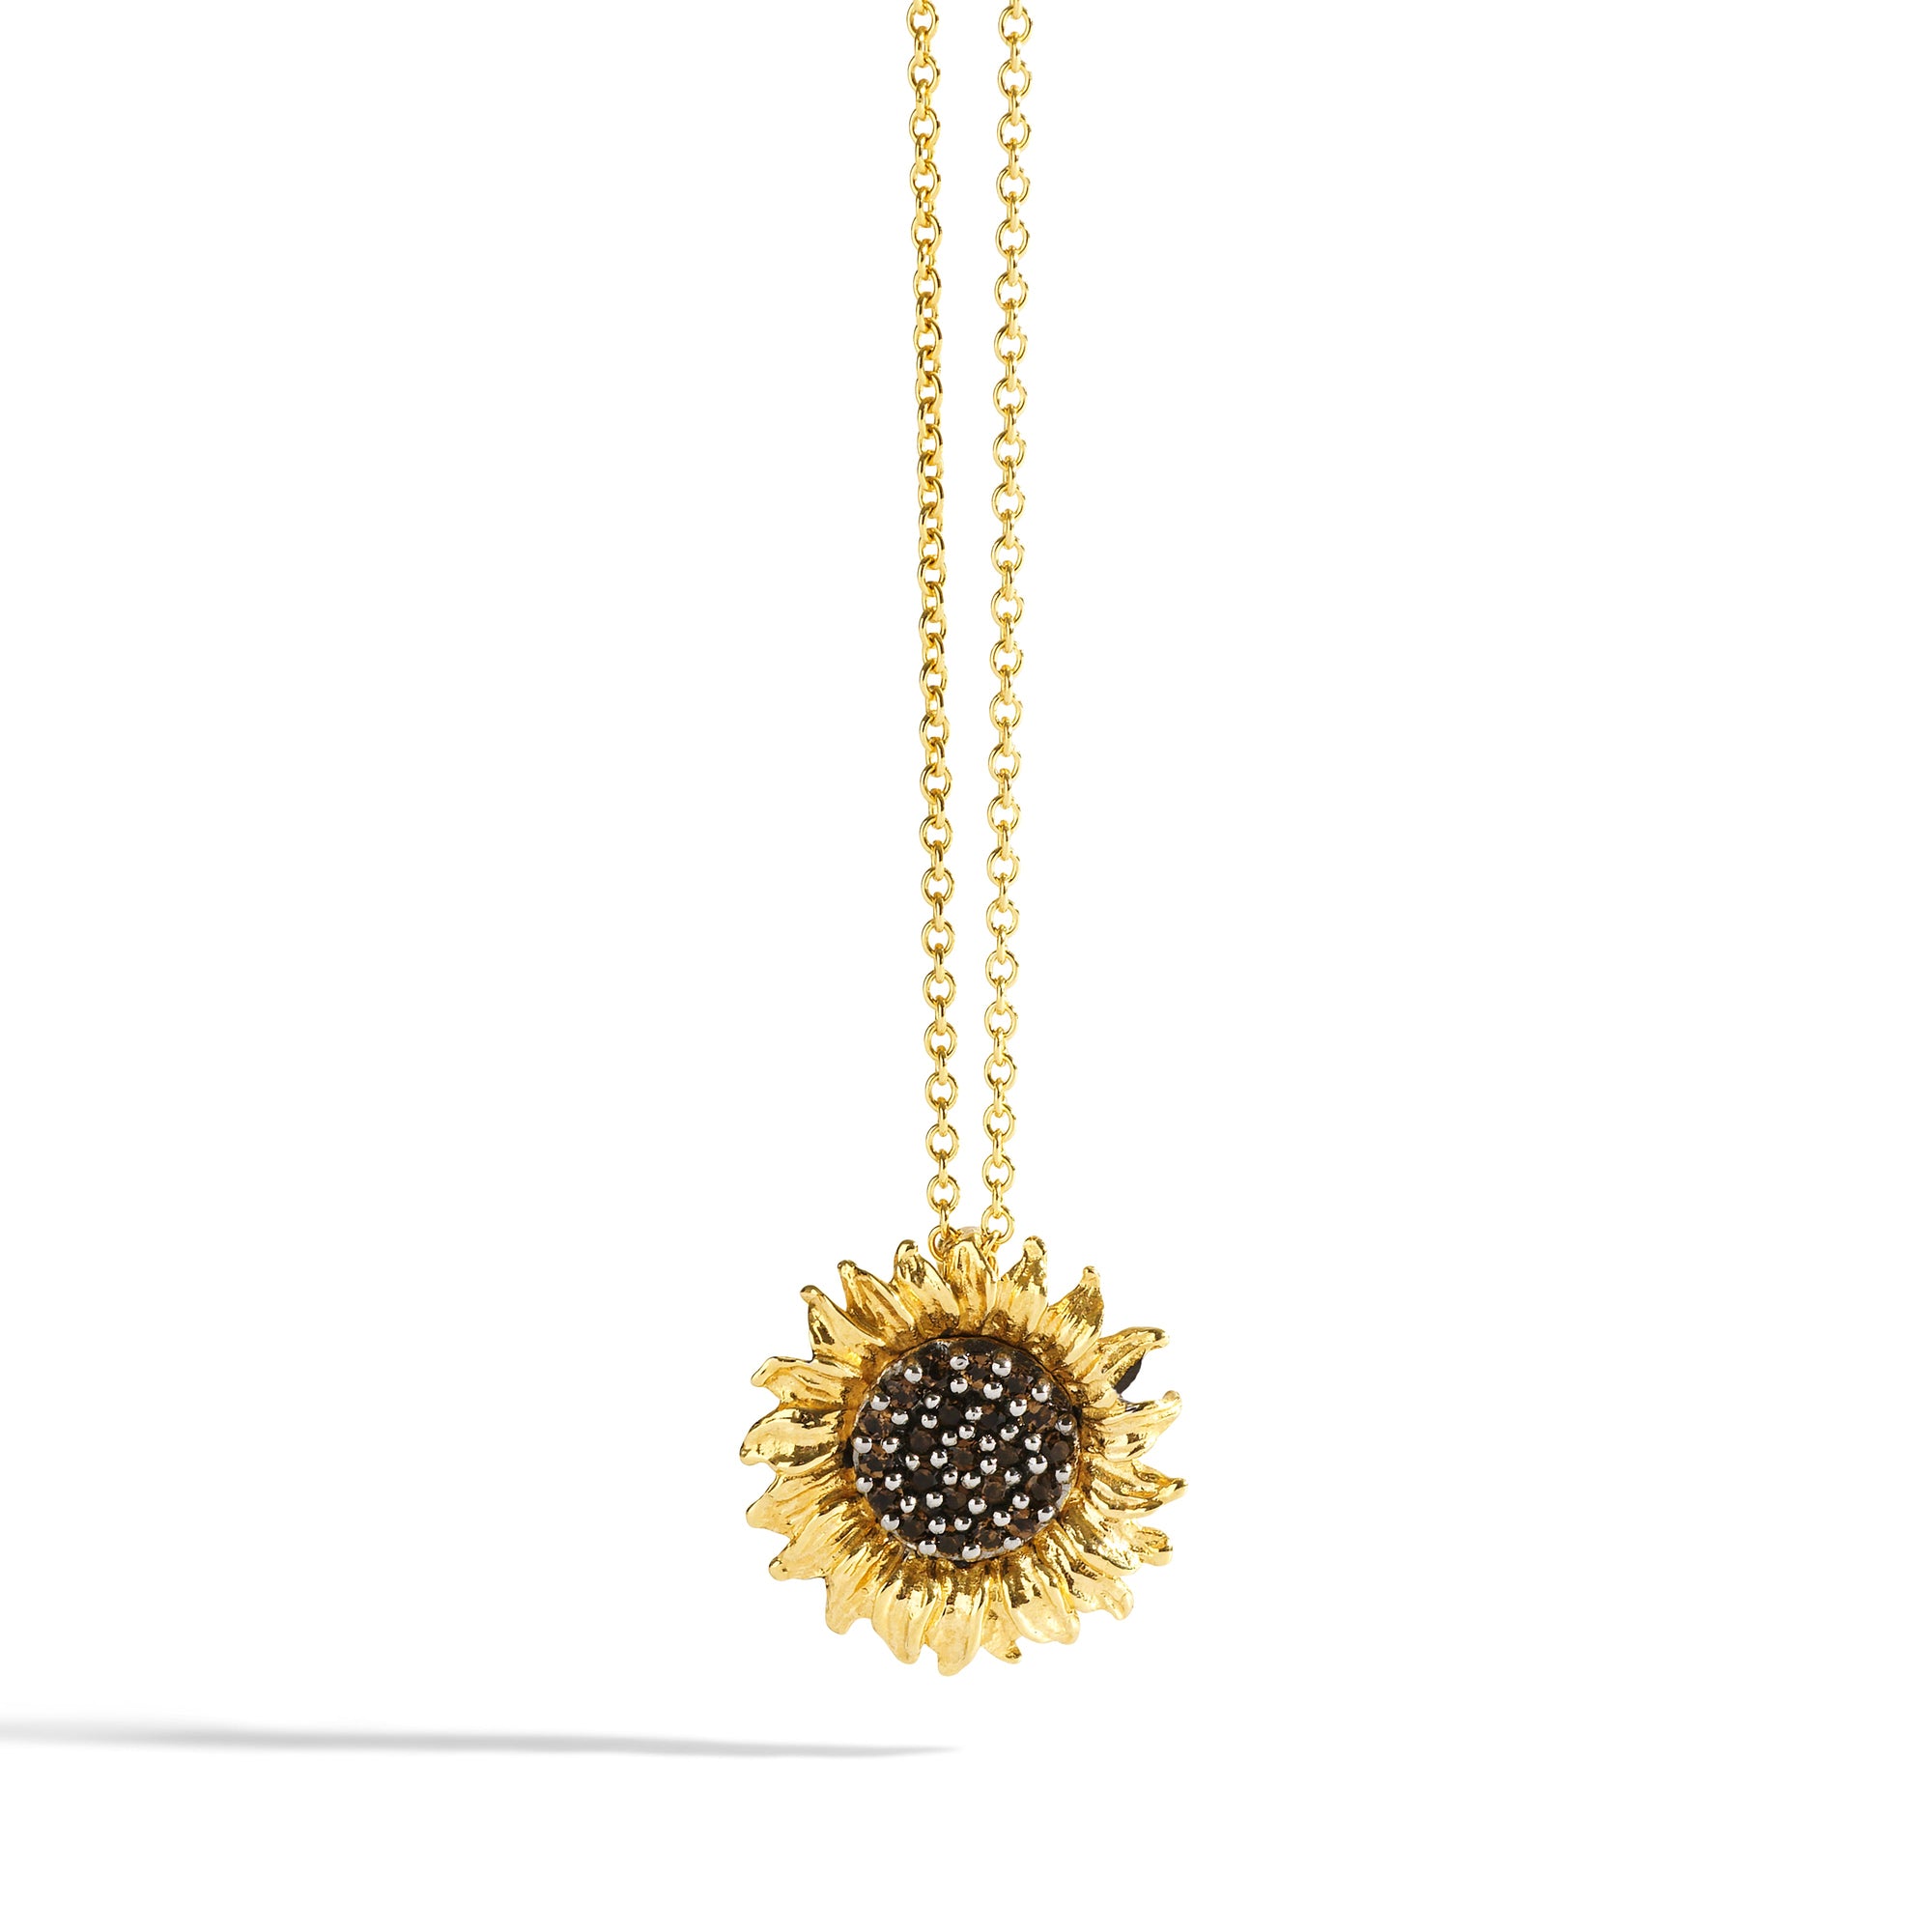 Michael Aram Vincent 15mm Pendant Necklace with Diamonds